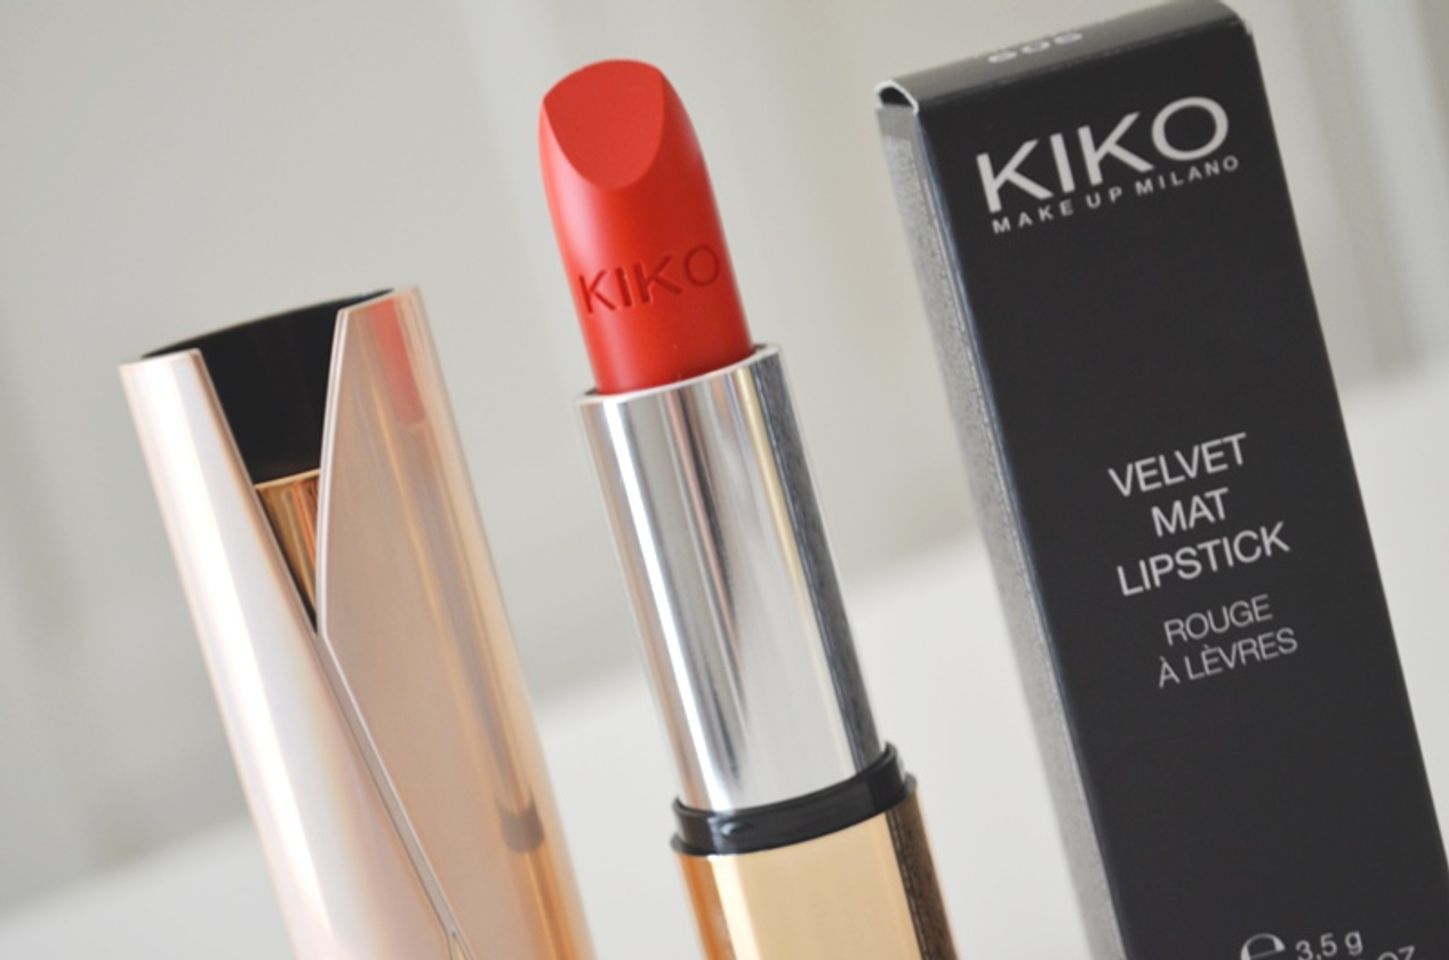 Son Kiko Velvet Mat Lipstick cho làn môi xinh đẹp và nữ tính